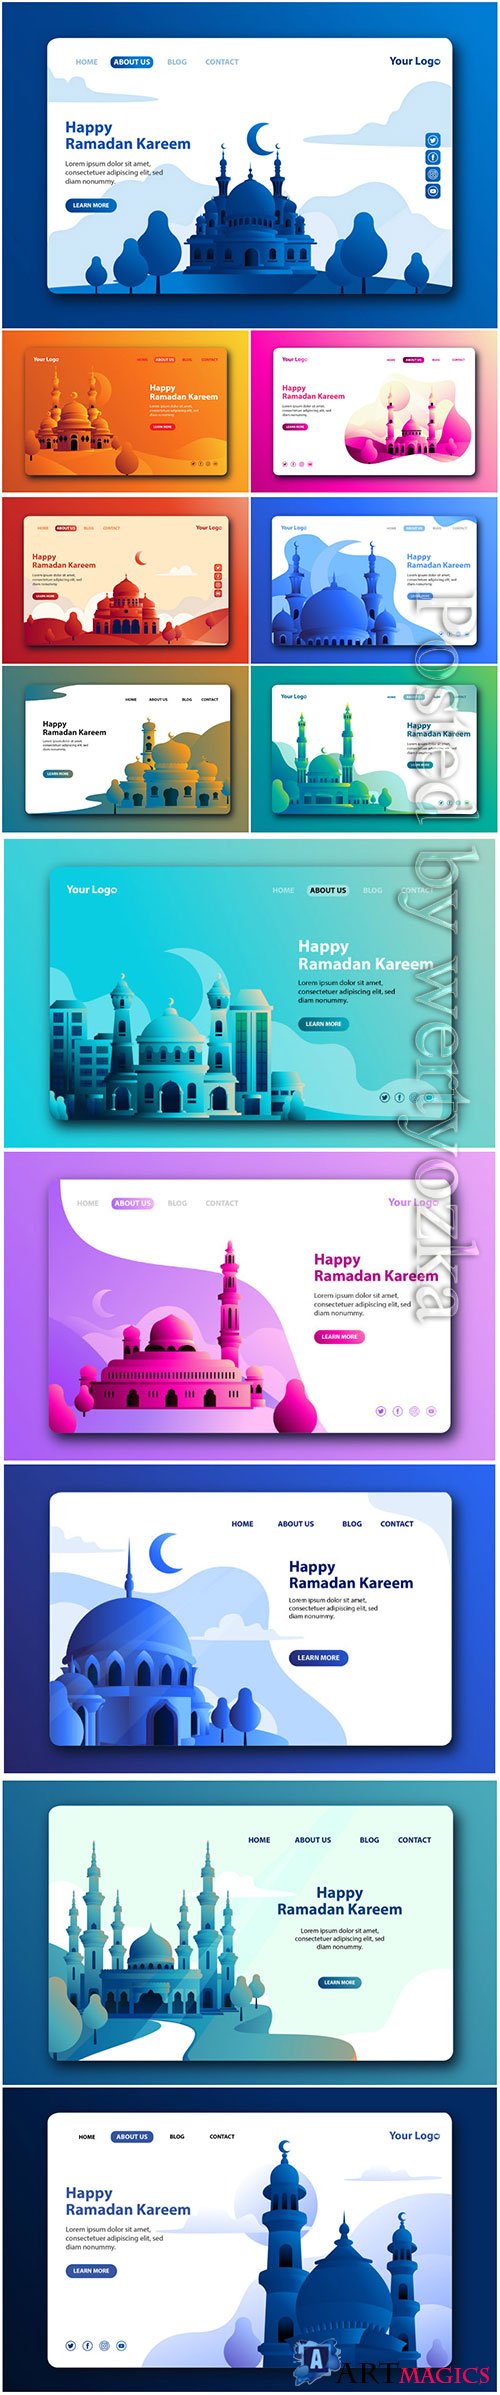 Happy Ramadan Kareem Landing Page